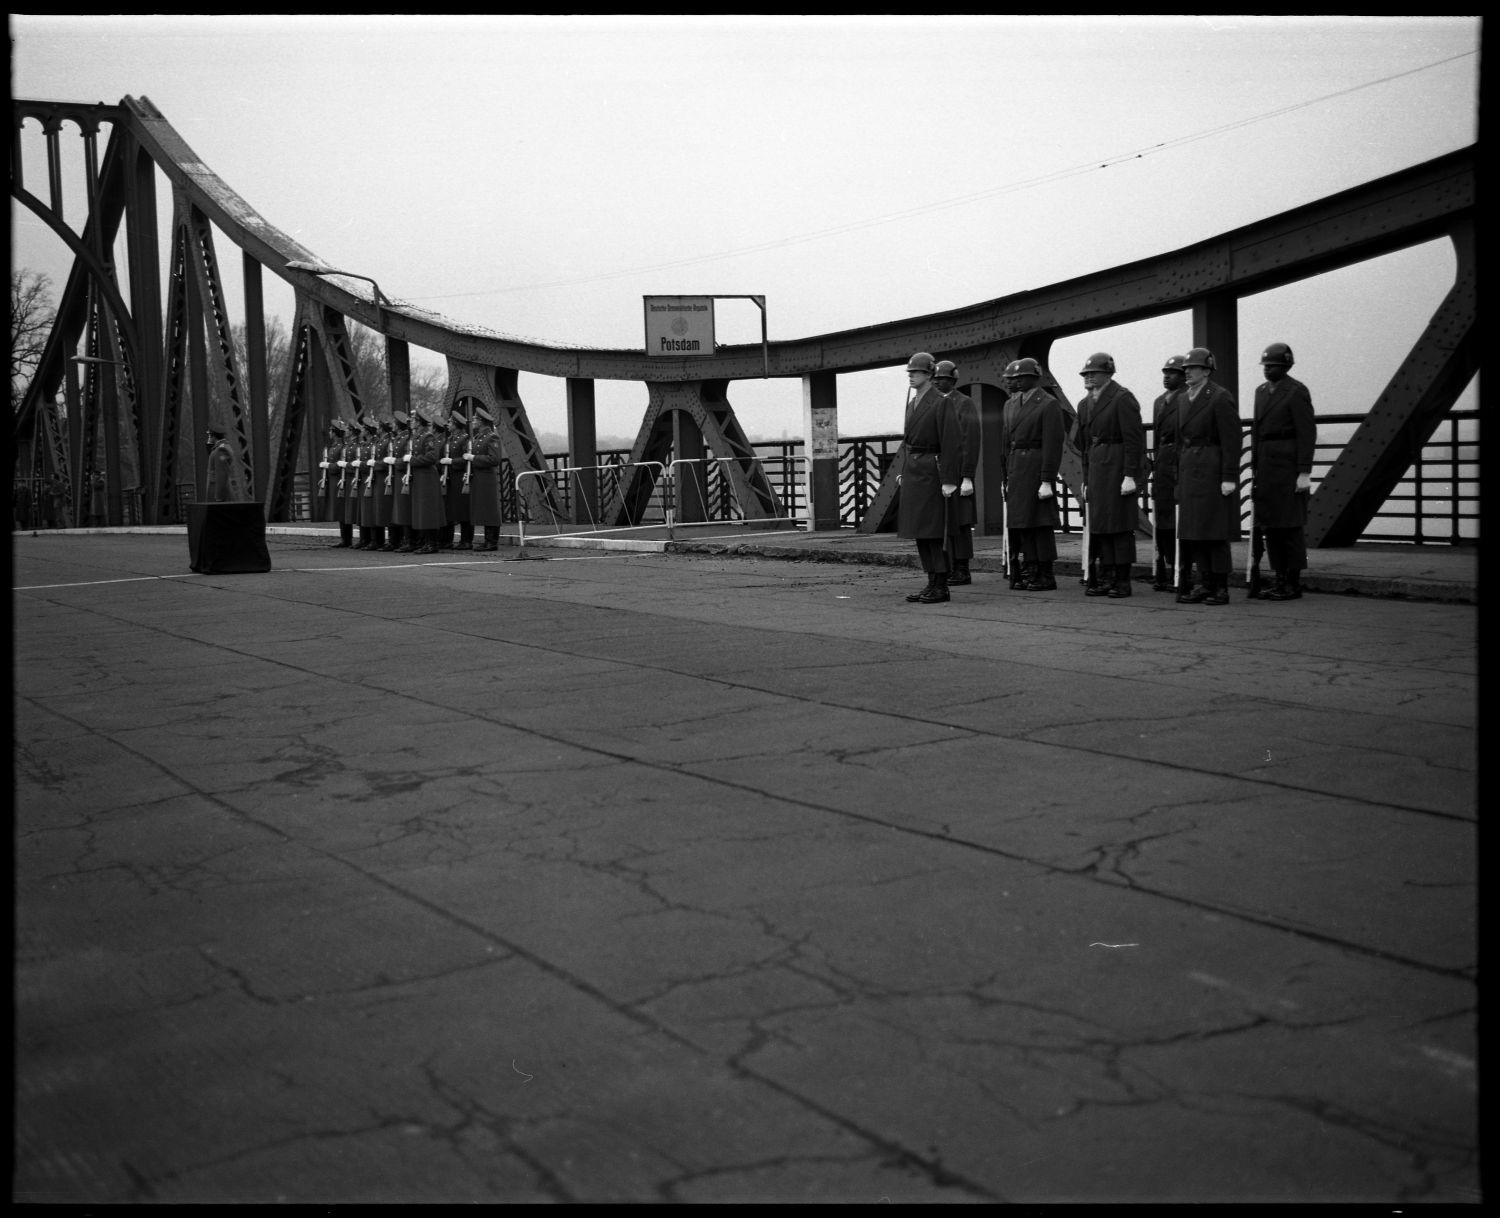 s/w-Fotografie: Überführung der sterblichen Überreste eines sowjetischen Soldaten über die Glienicker Brücke zwischen West-Berlin und Potsdam (AlliiertenMuseum/U.S. Army Photograph Public Domain Mark)